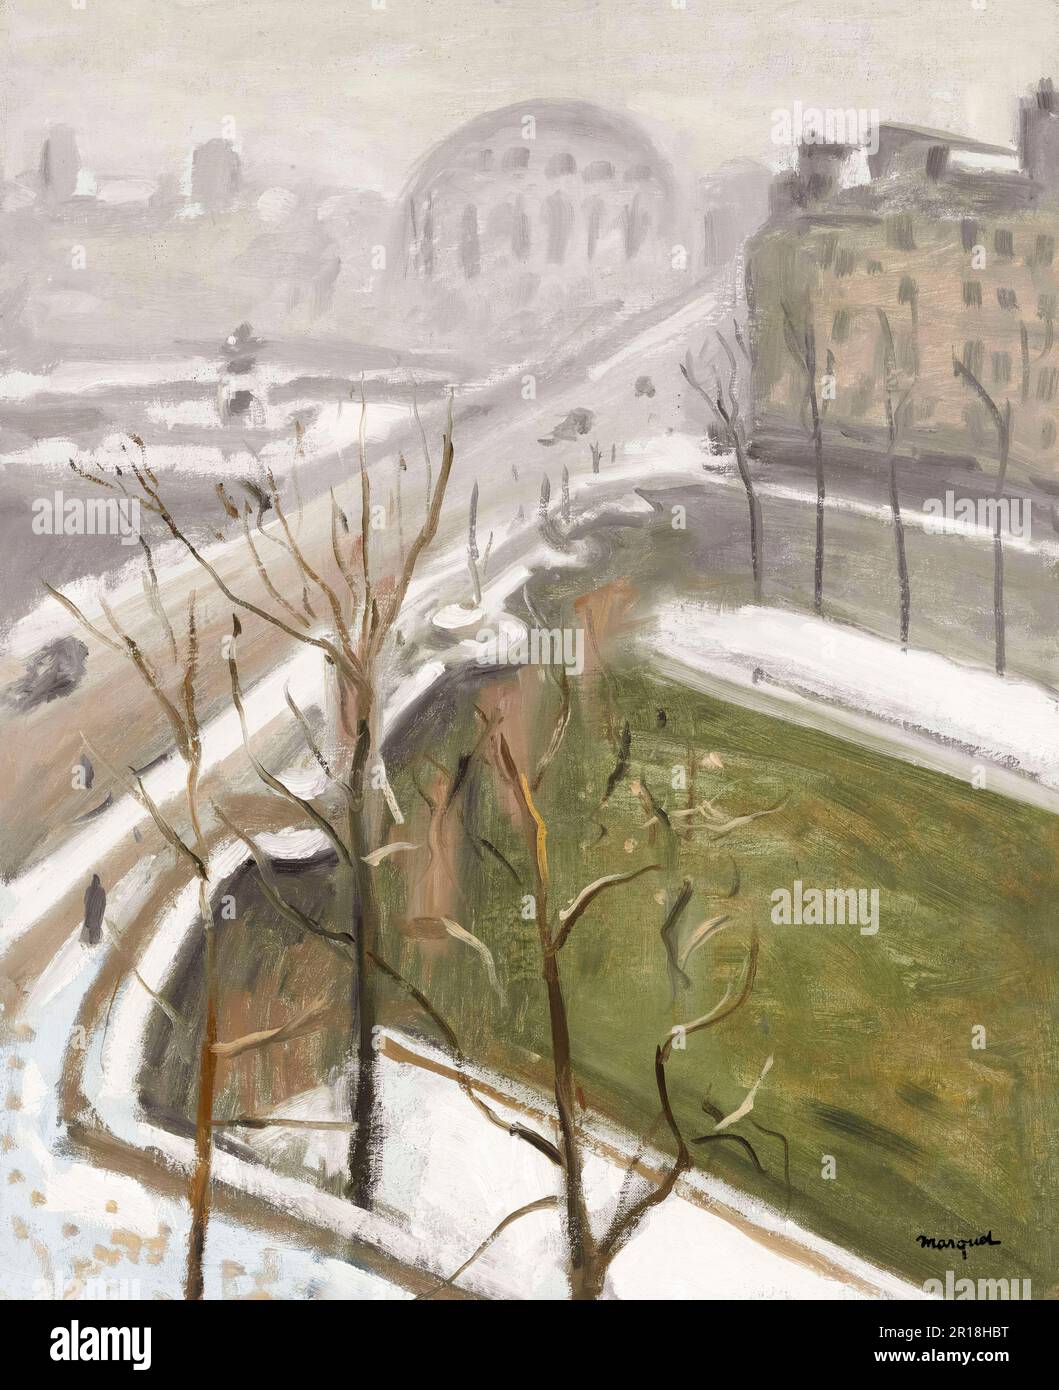 Albert Marquet, Paris, Le Pont-Neuf: fin de la neige, painting in oil on canvas, 1947 Stock Photo